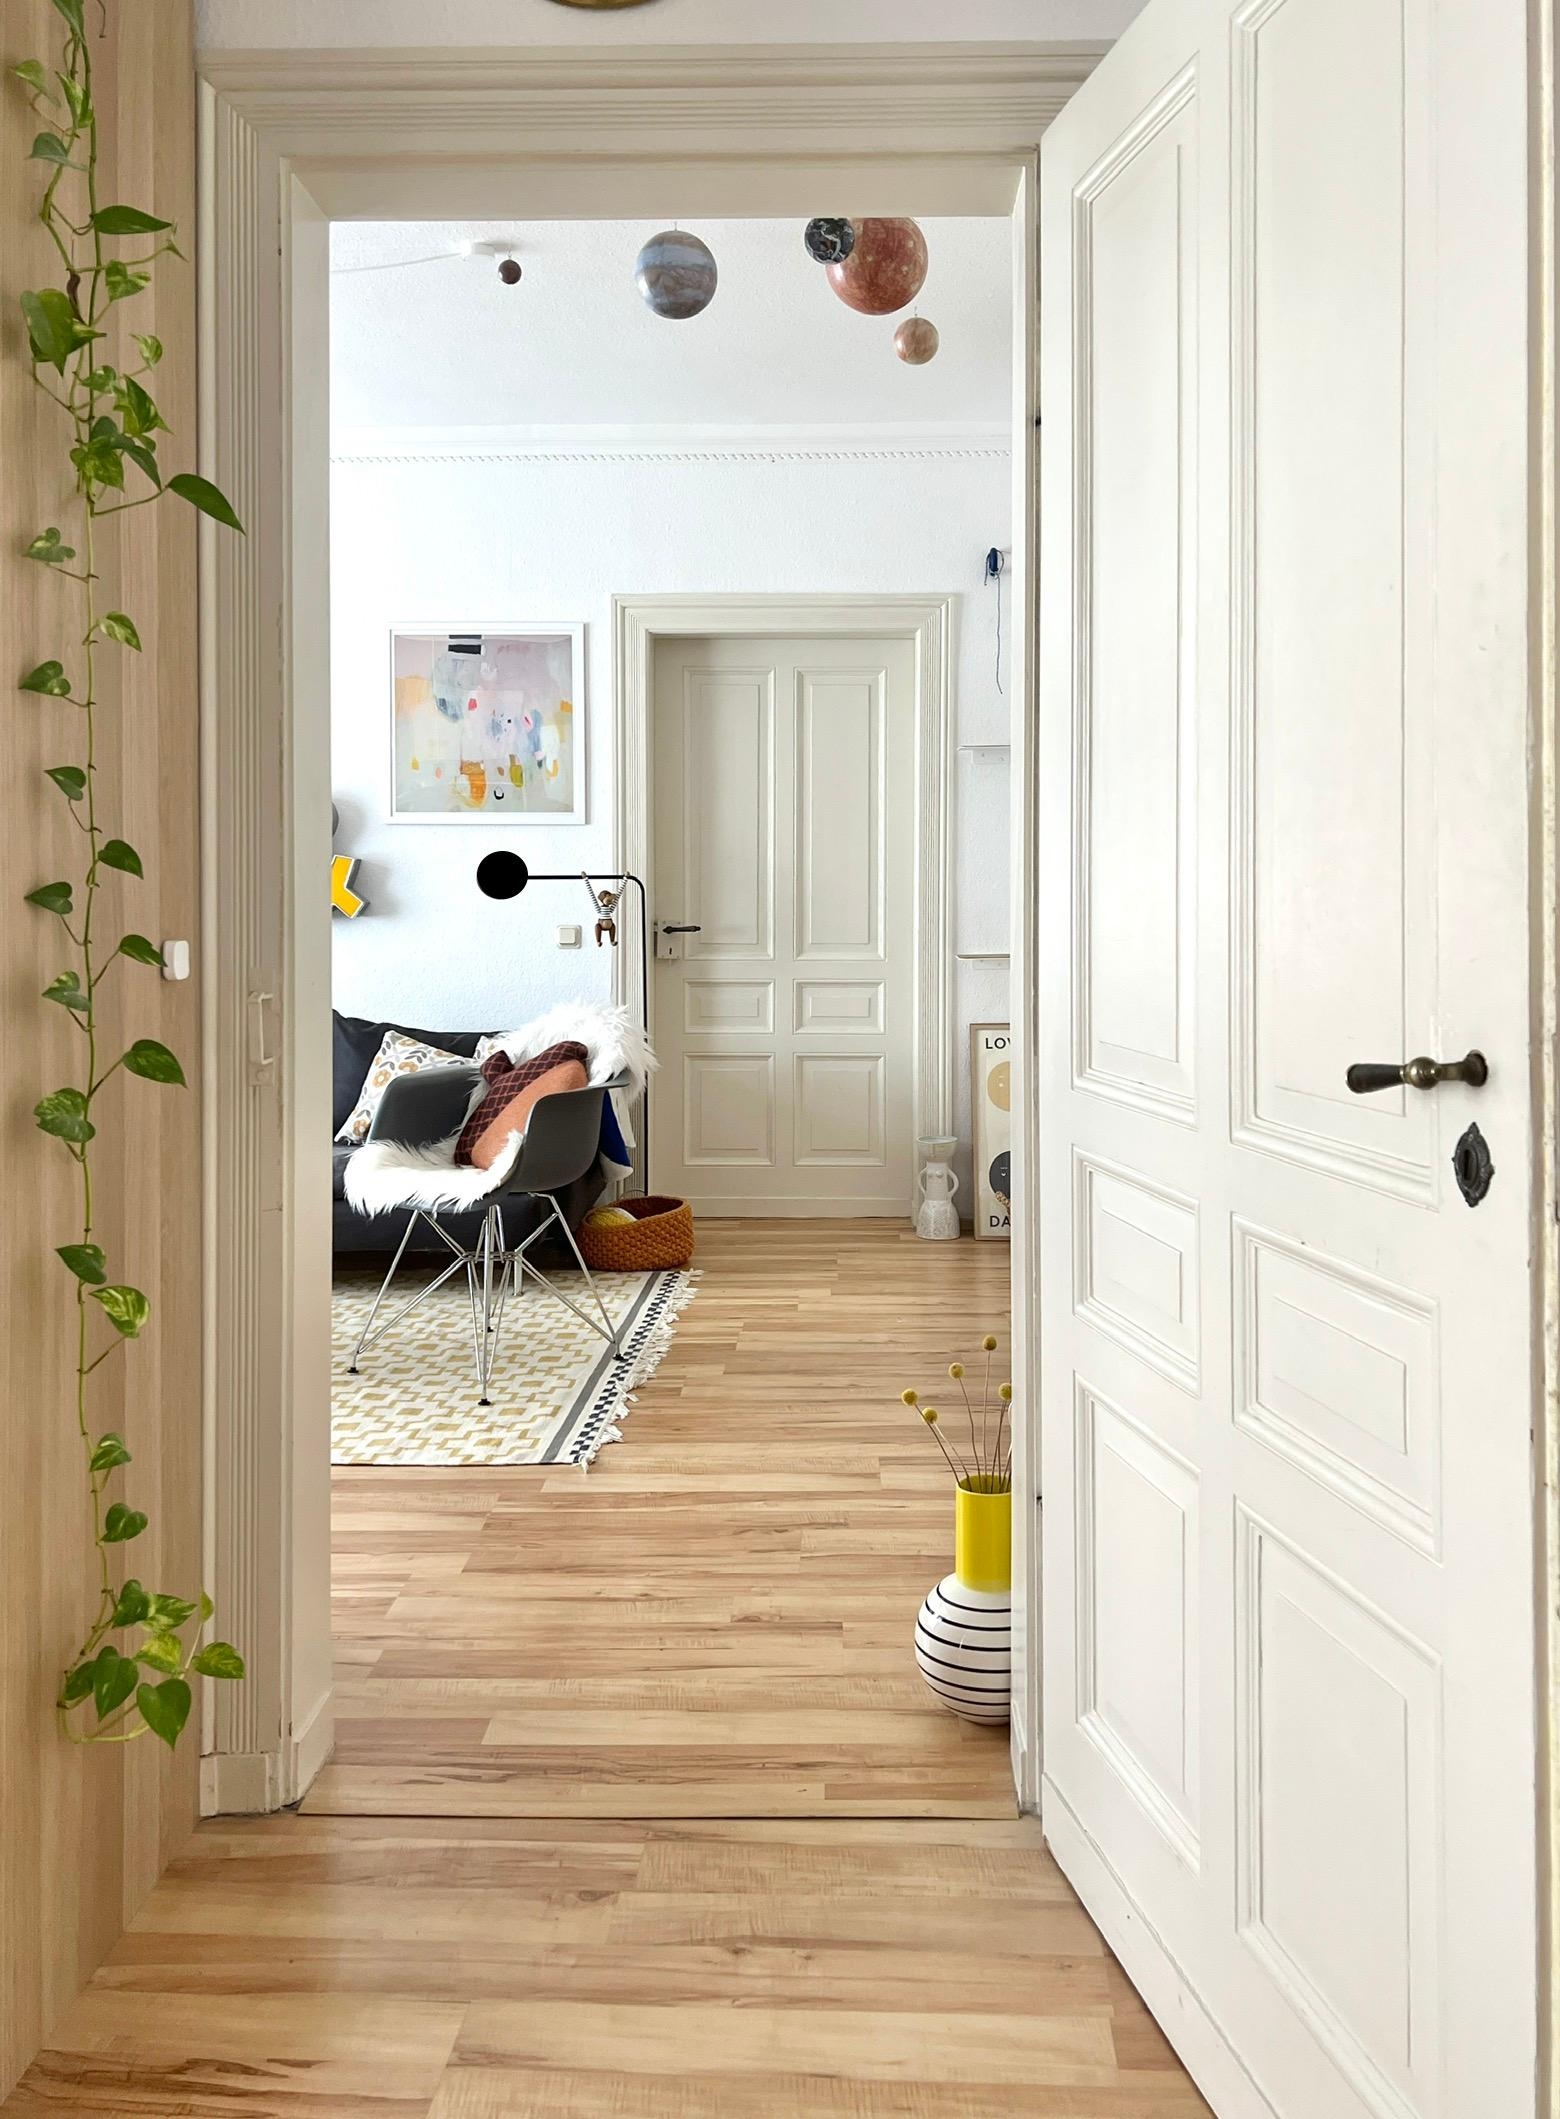 #interior #interiordesign #couchliebt #wohnzimmer #altbau #altbautüren #offenetüren #pflanzen 